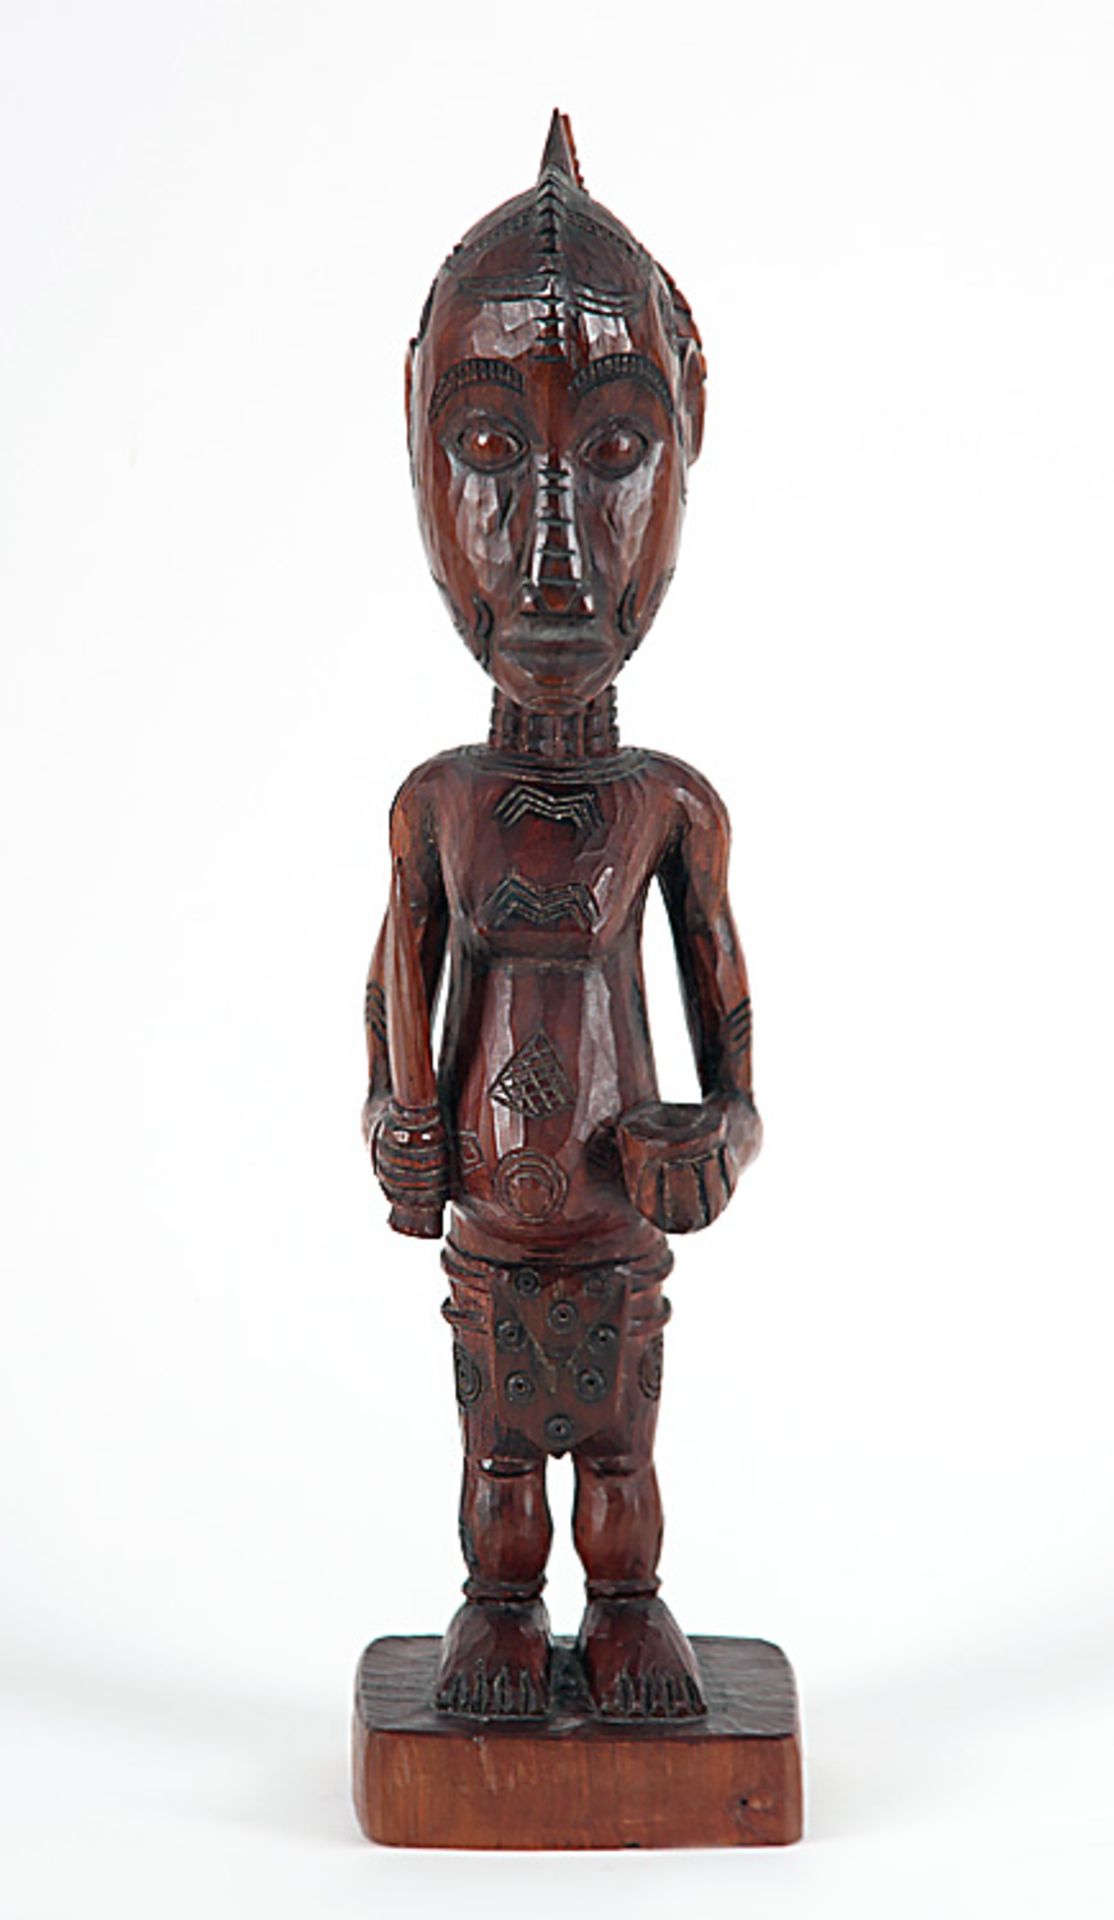 Stehende Figur mit Dolch und kleinem GefäßZentralafrika. Holz, rotbraune Patina. Kunstvoll